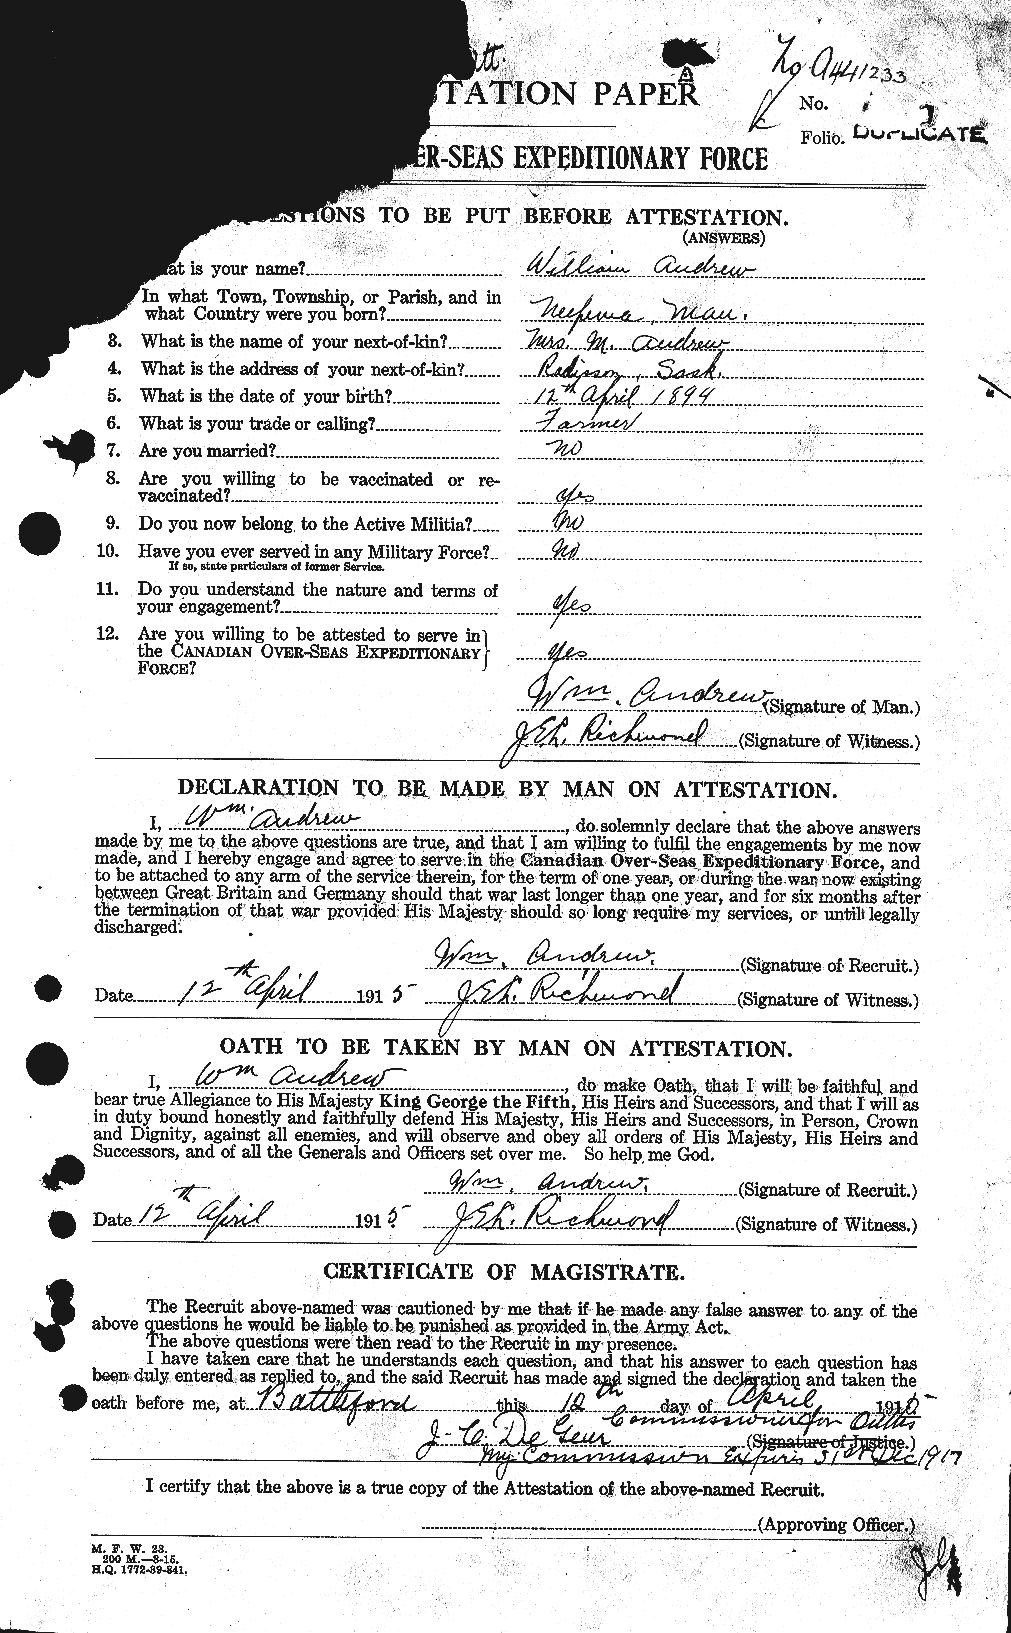 Dossiers du Personnel de la Première Guerre mondiale - CEC 210475a